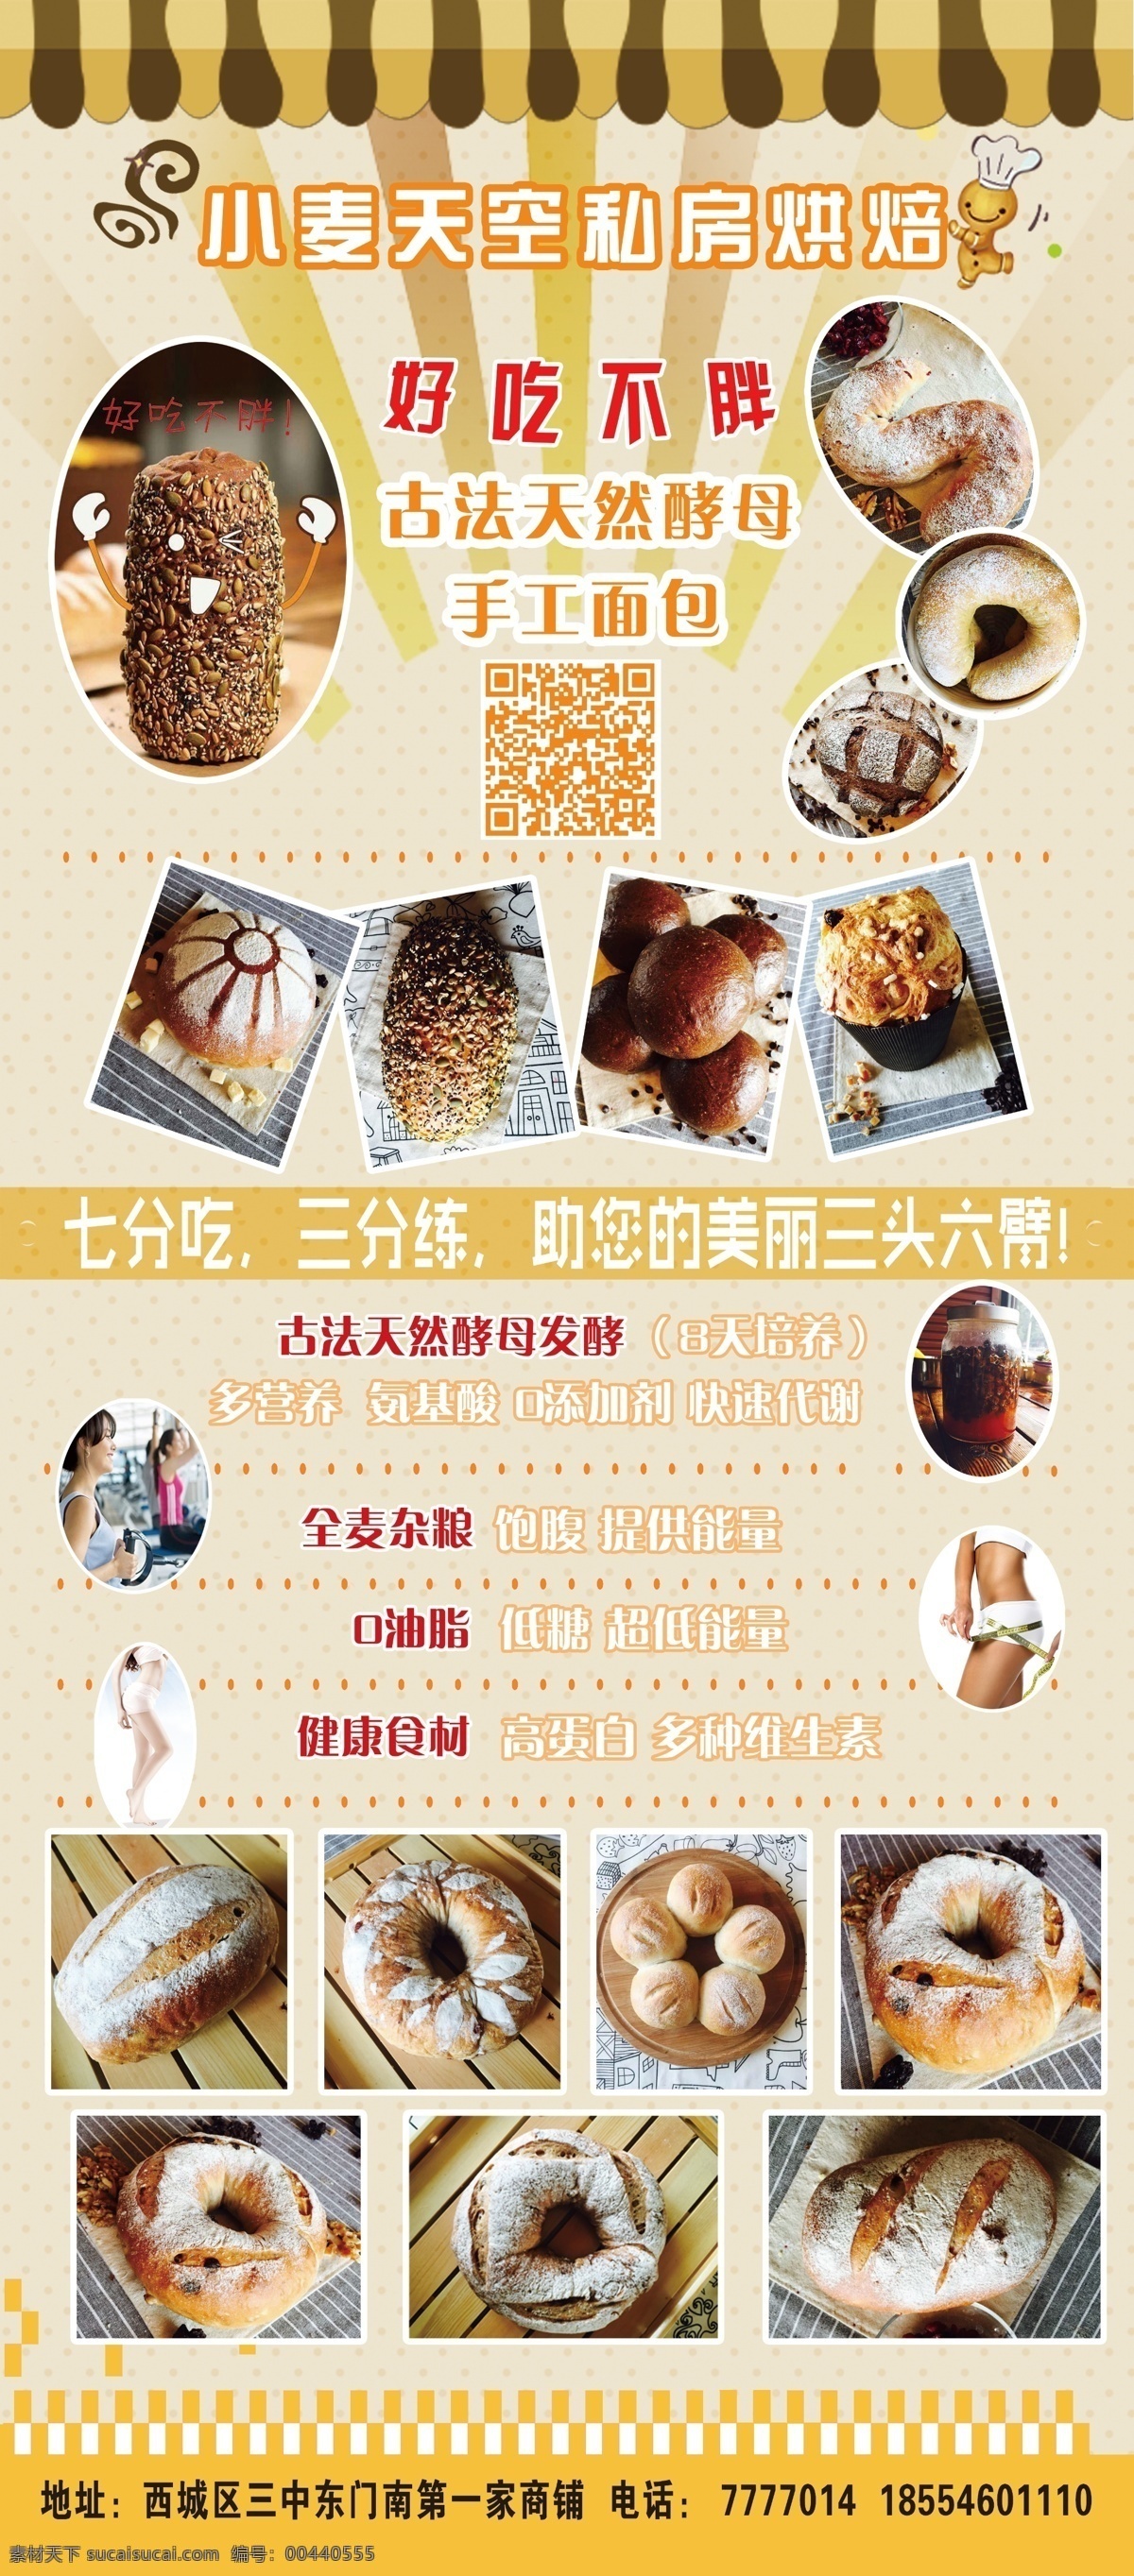 面包店 展架 小麦 天空 甜点 蛋糕 面包 原创设计 原创海报